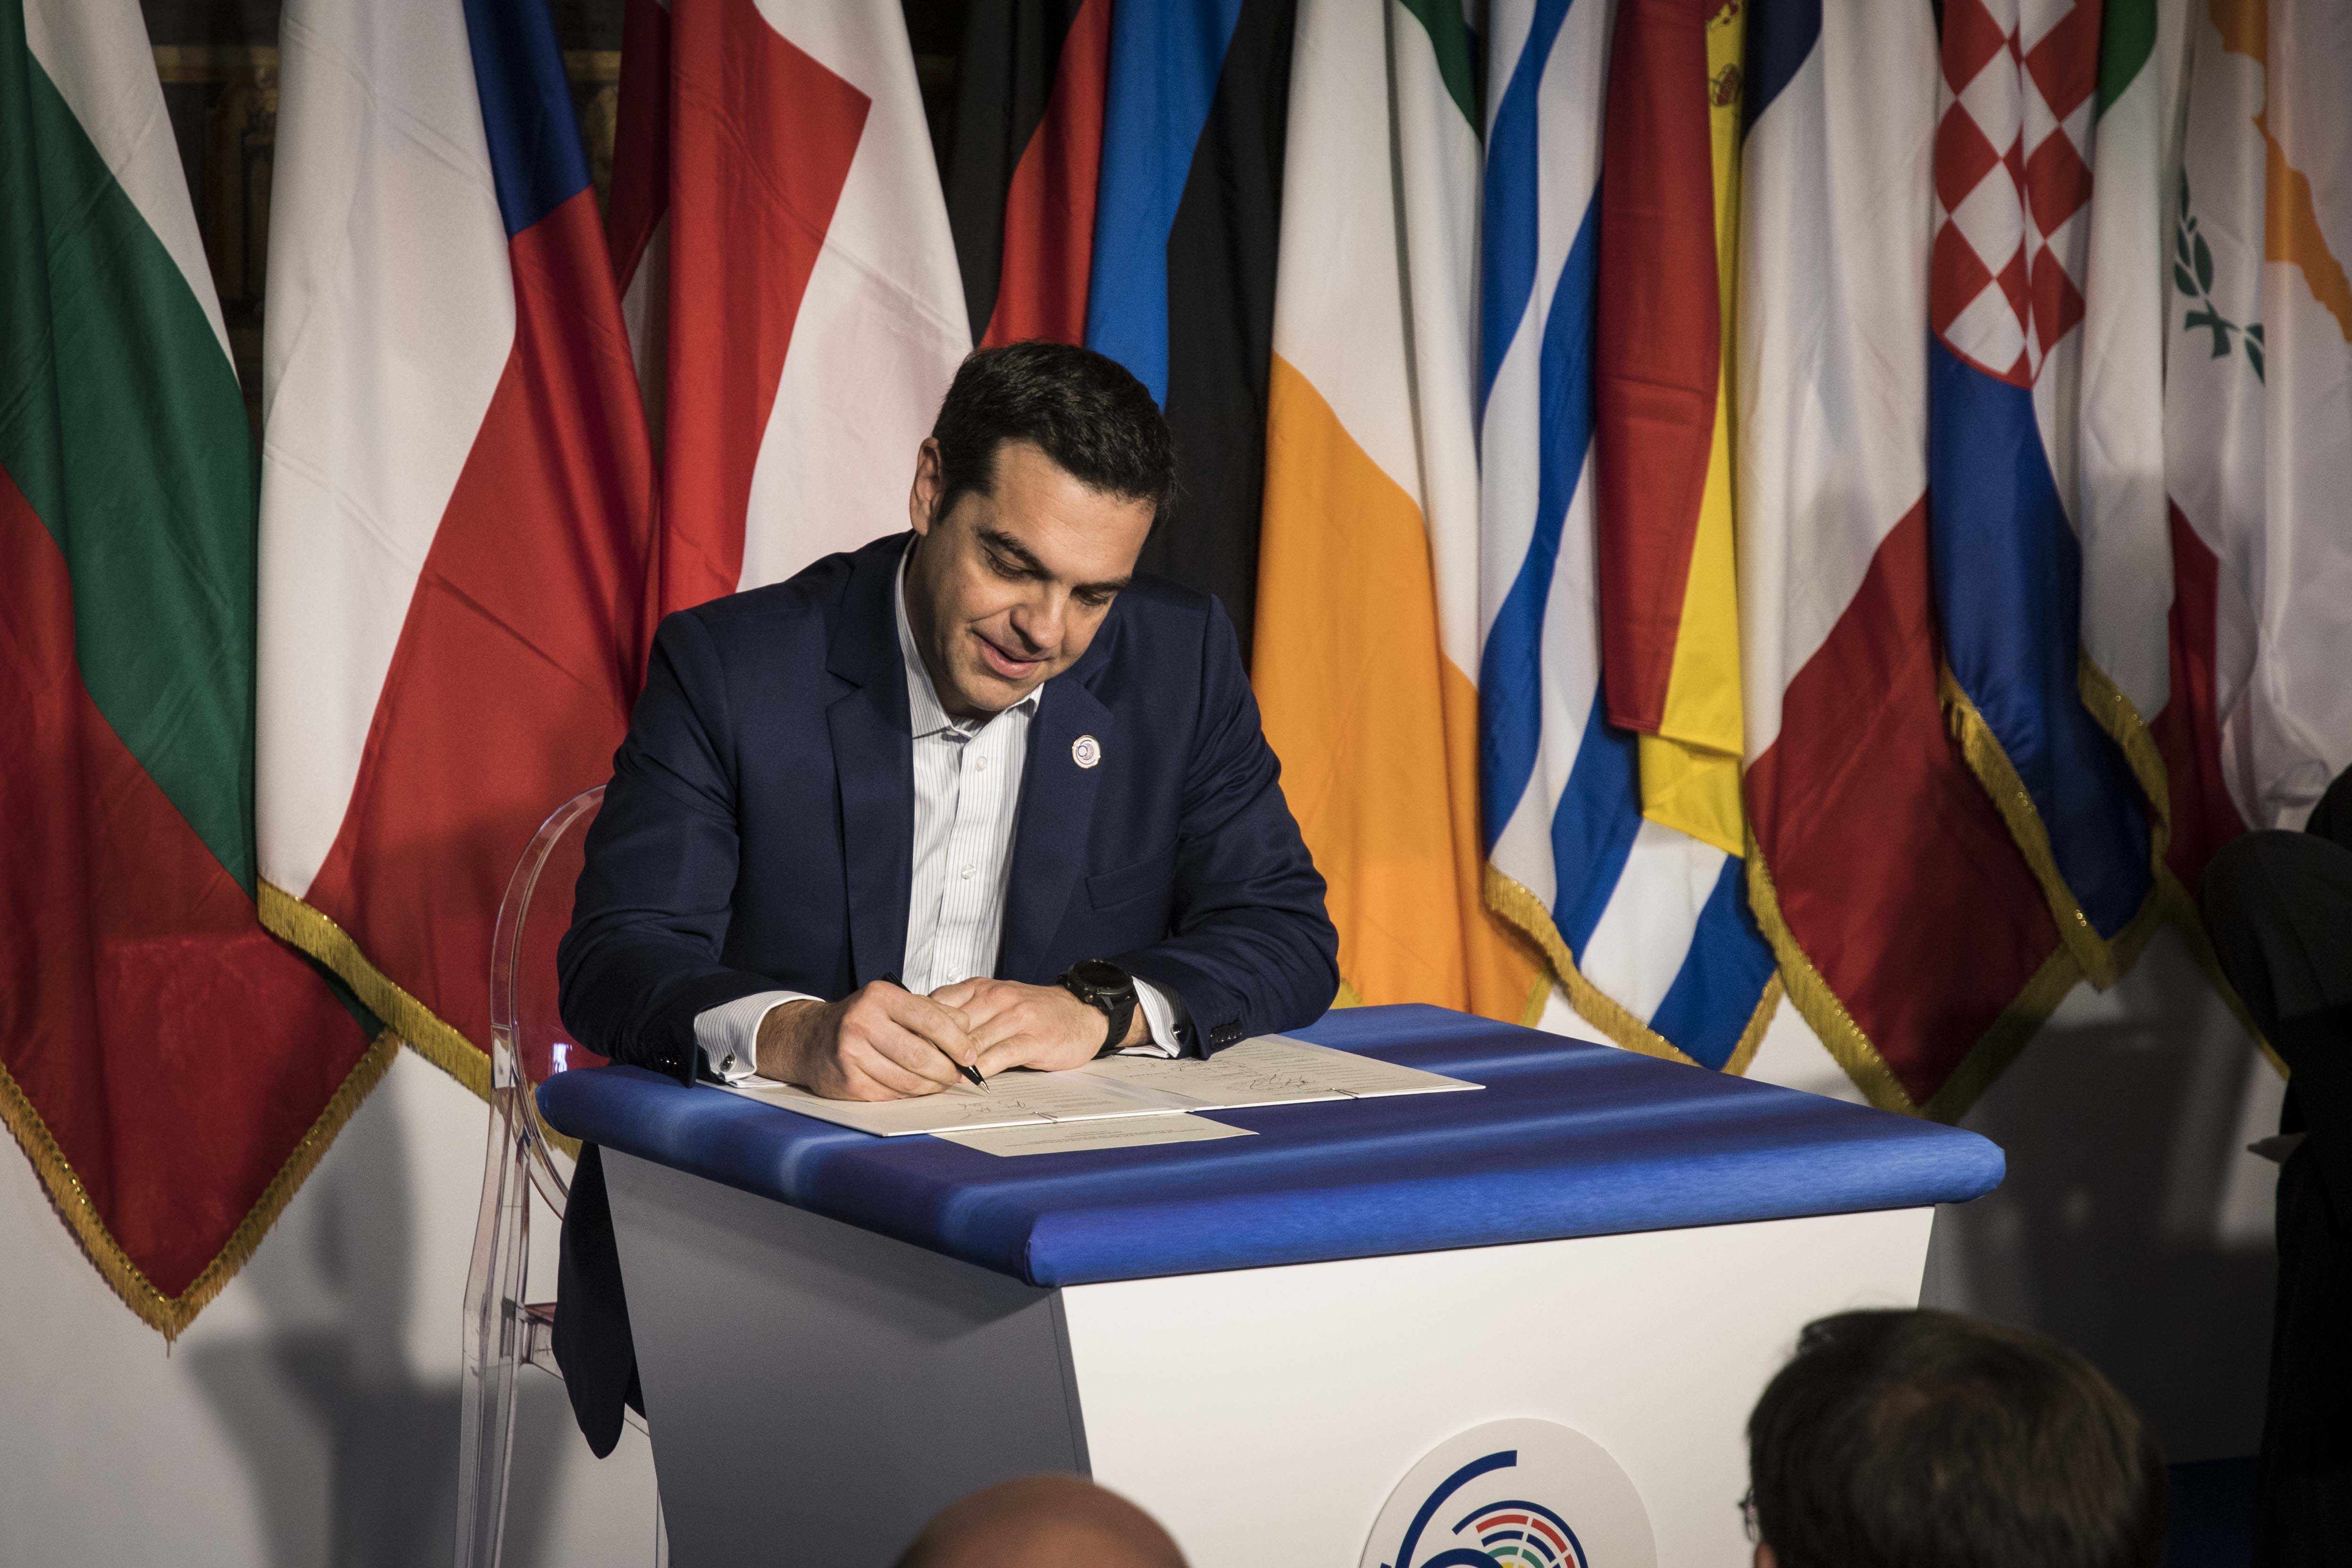 Α. Τσίπρας μετά τη Σύνοδο: Ανάγκη ενίσχυσης του κοινωνικού χαρακτήρα της Ευρώπης, εχθρός οι νεοφιλελεύθερες θέσεις